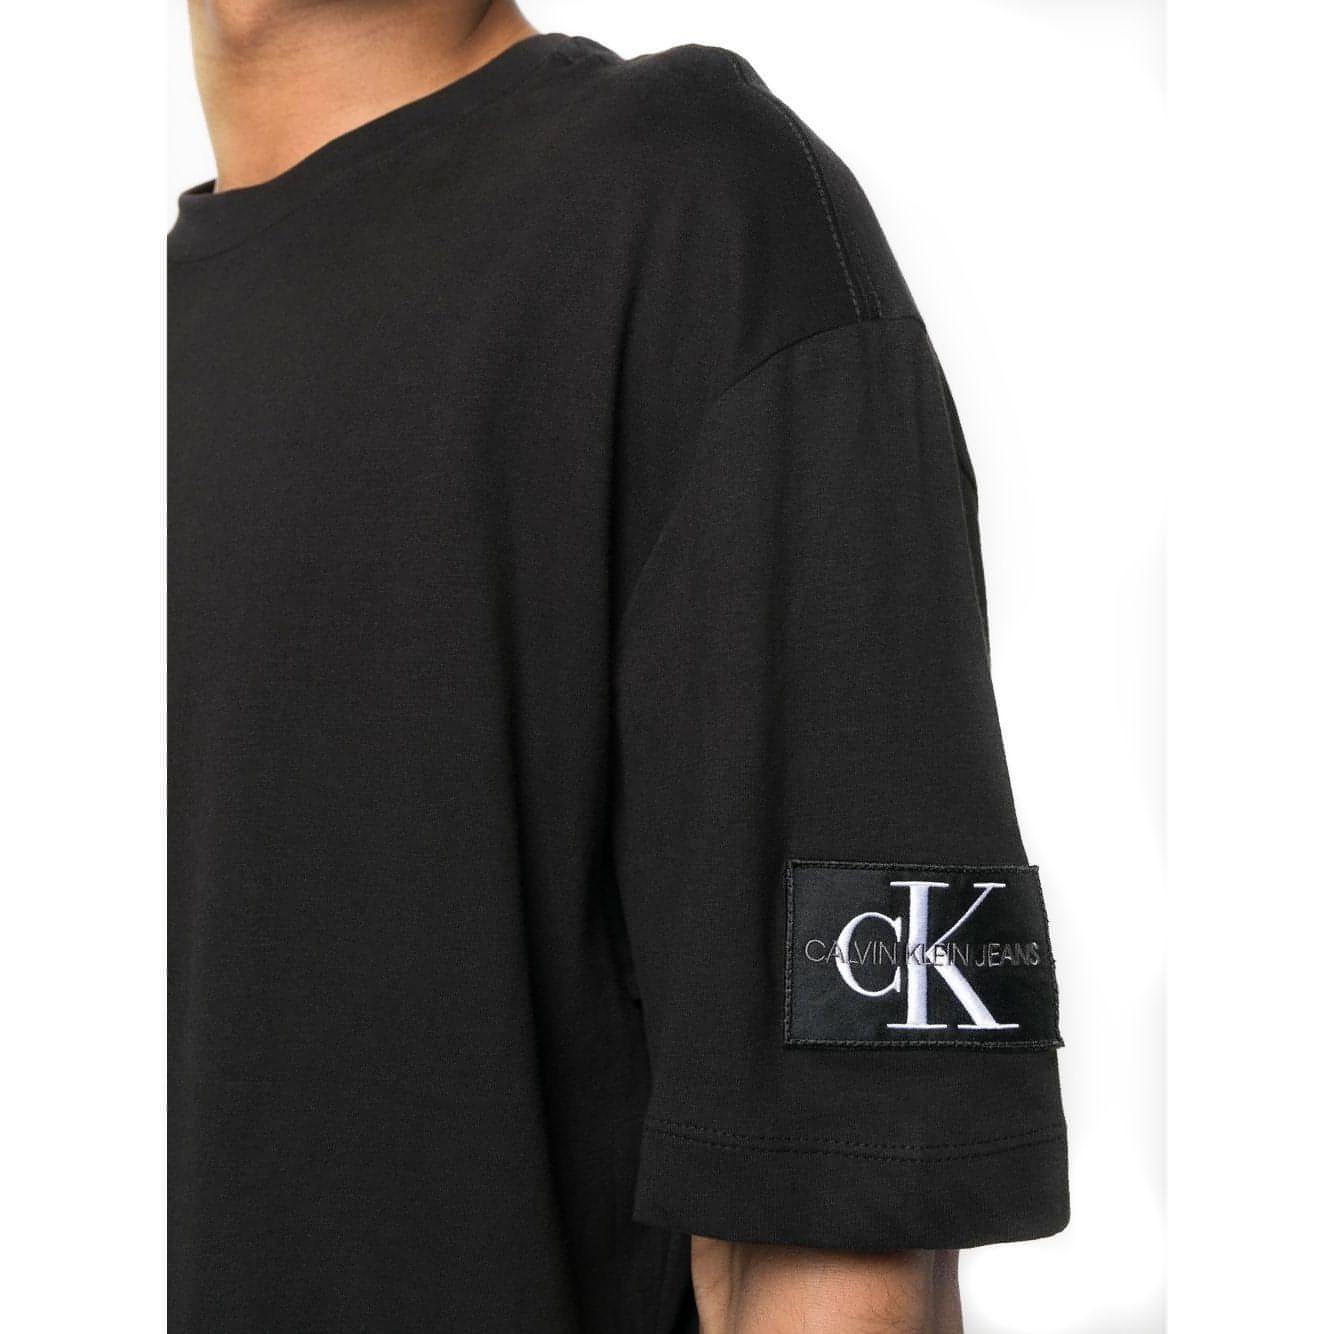 CALVIN KLEIN JEANS vyriški juodi marškinėliai Monologo t-shirt